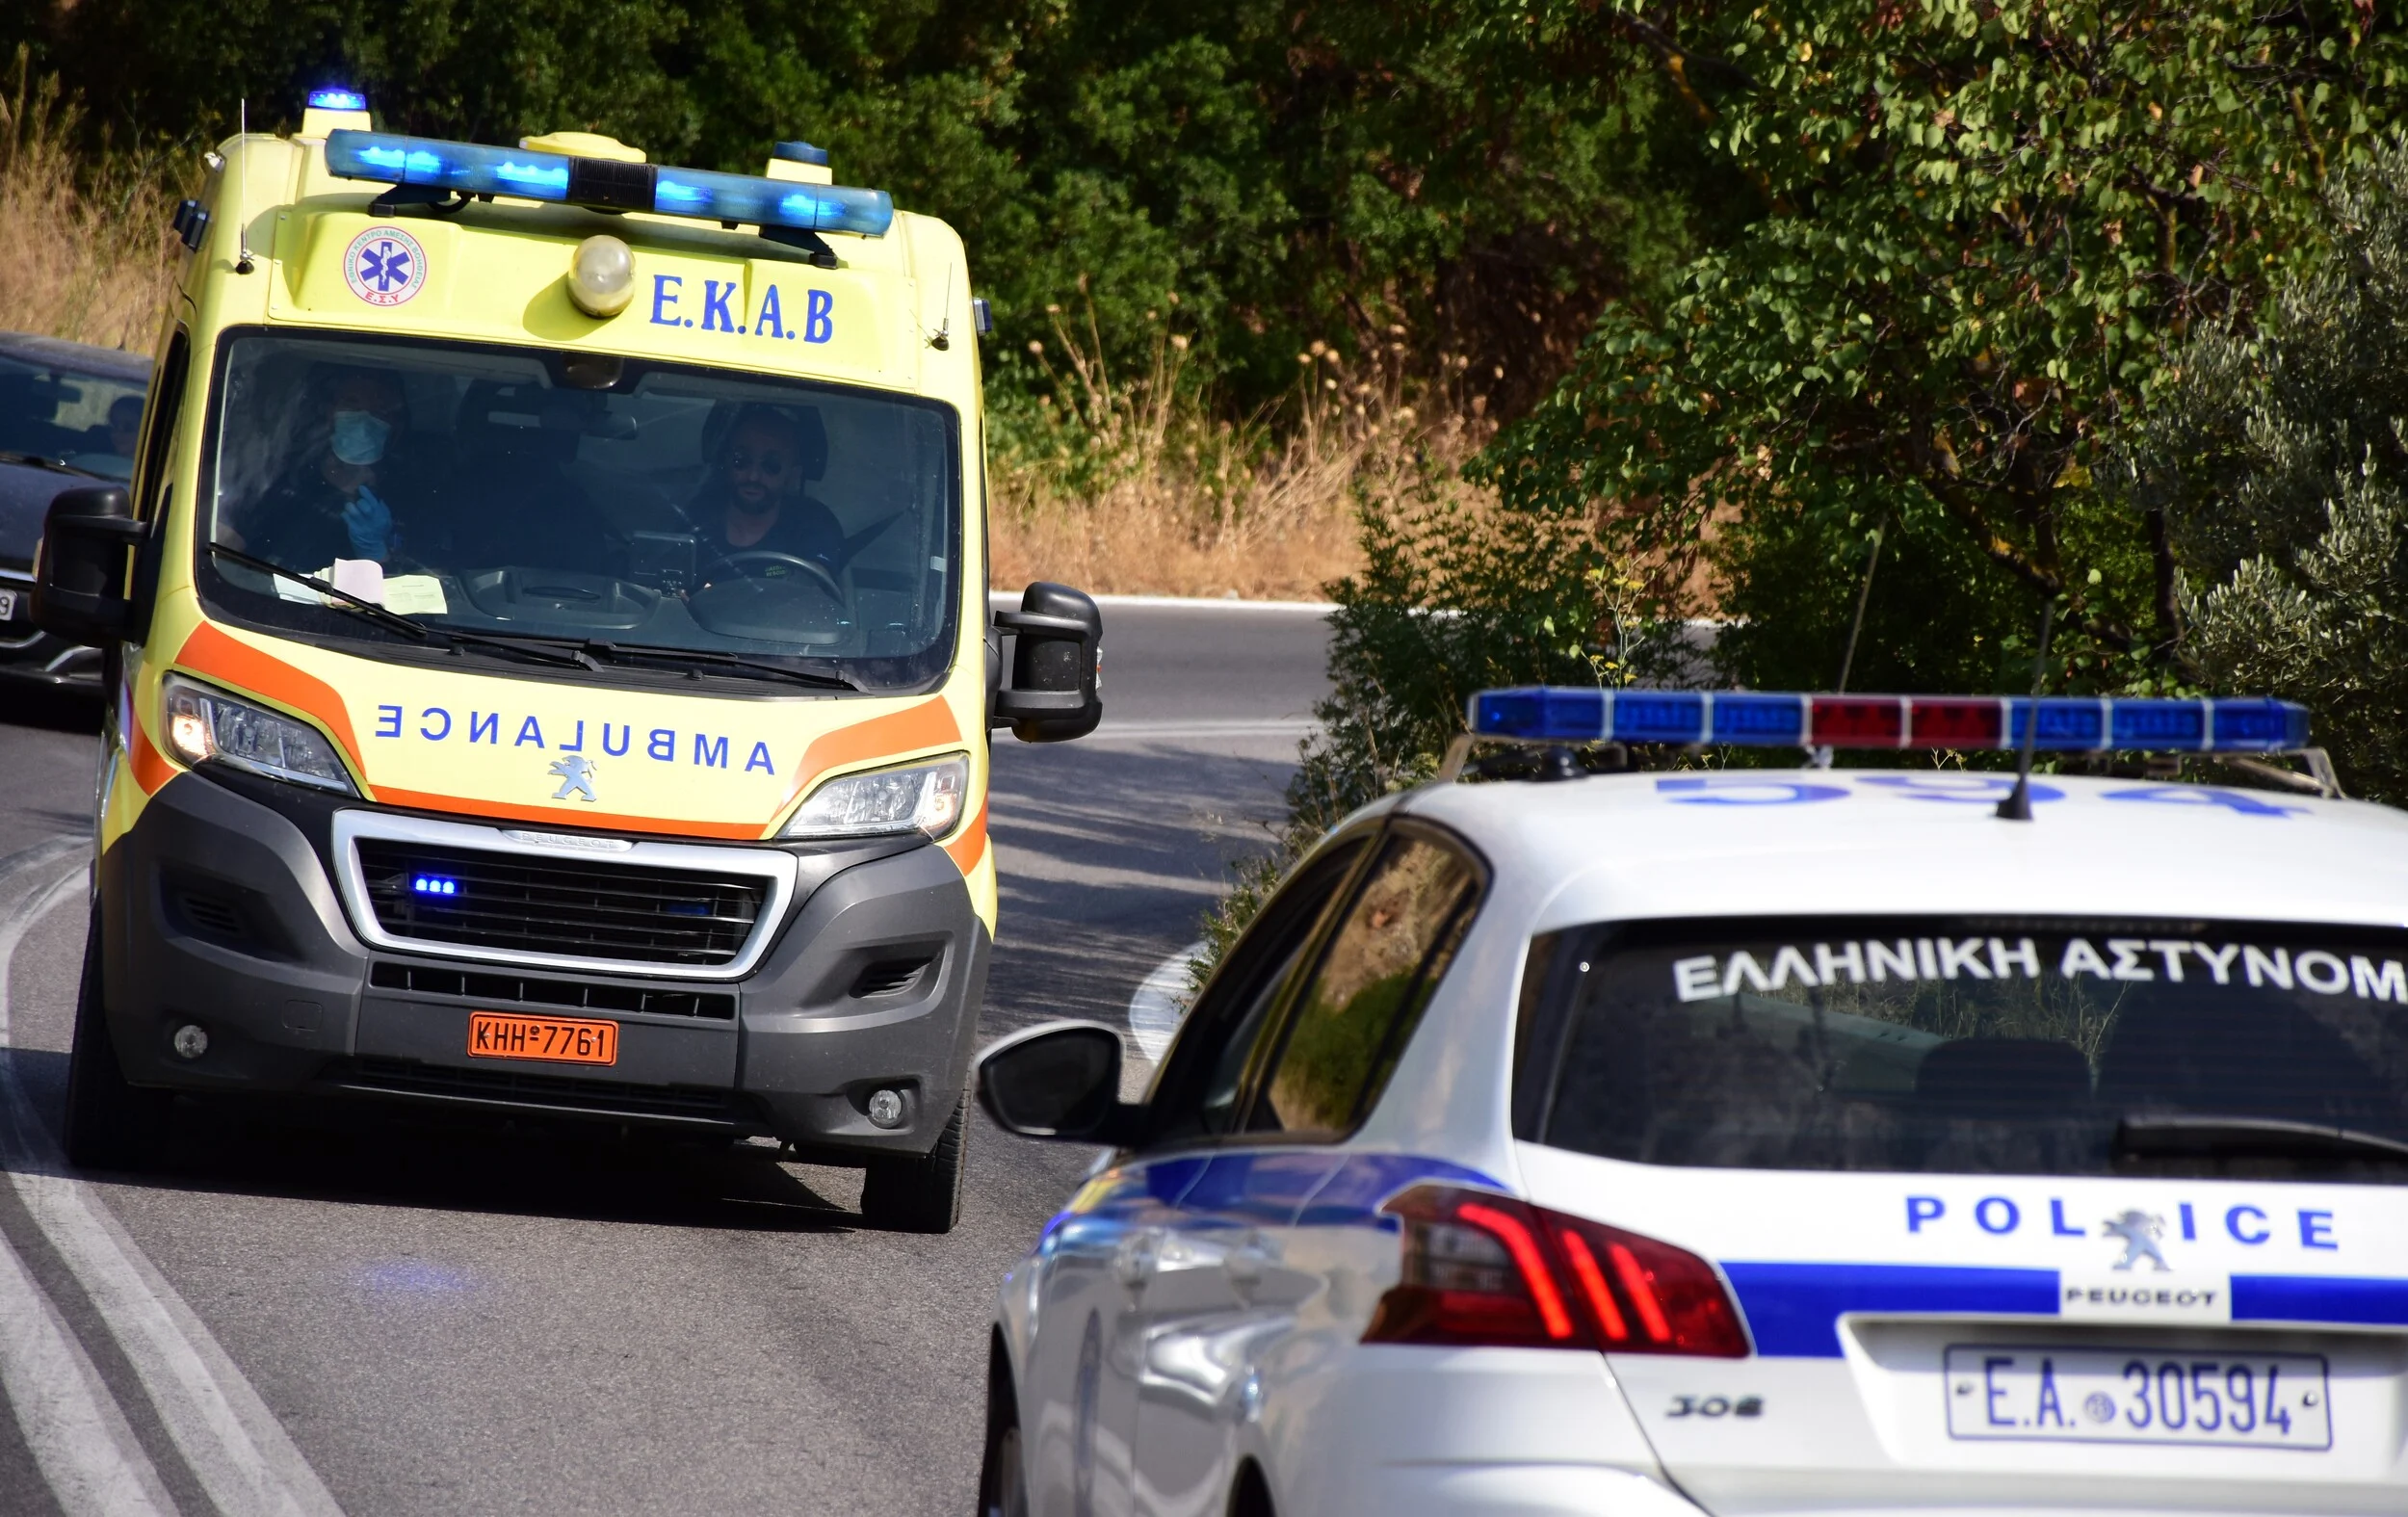 Έβρος: Κατέληξε ο 57χρονος Έλληνας που τον πάτησε επίτηδες Τούρκος με το αυτοκίνητό του αφού τον χτύπησε πρώτα με λοστό